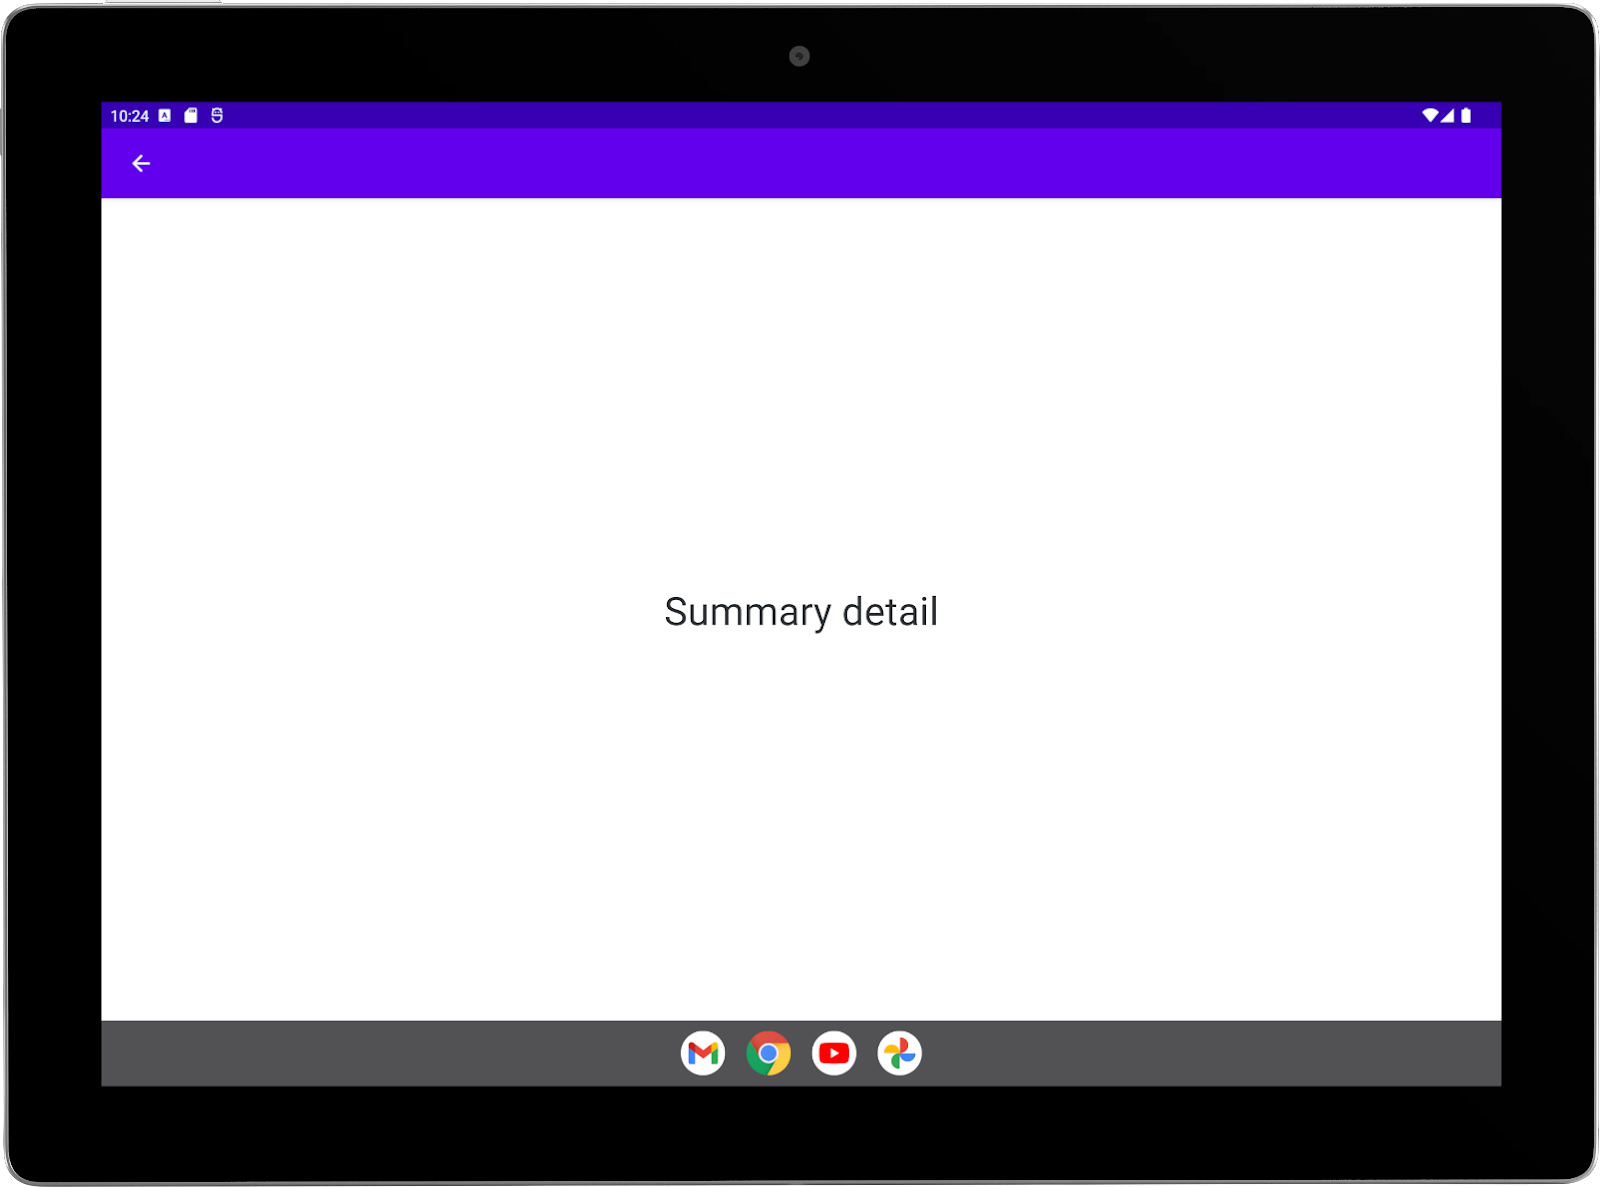 Grande tablette avec une application exemple exécutée en mode paysage Activité "Summary" (Résumé) en plein écran